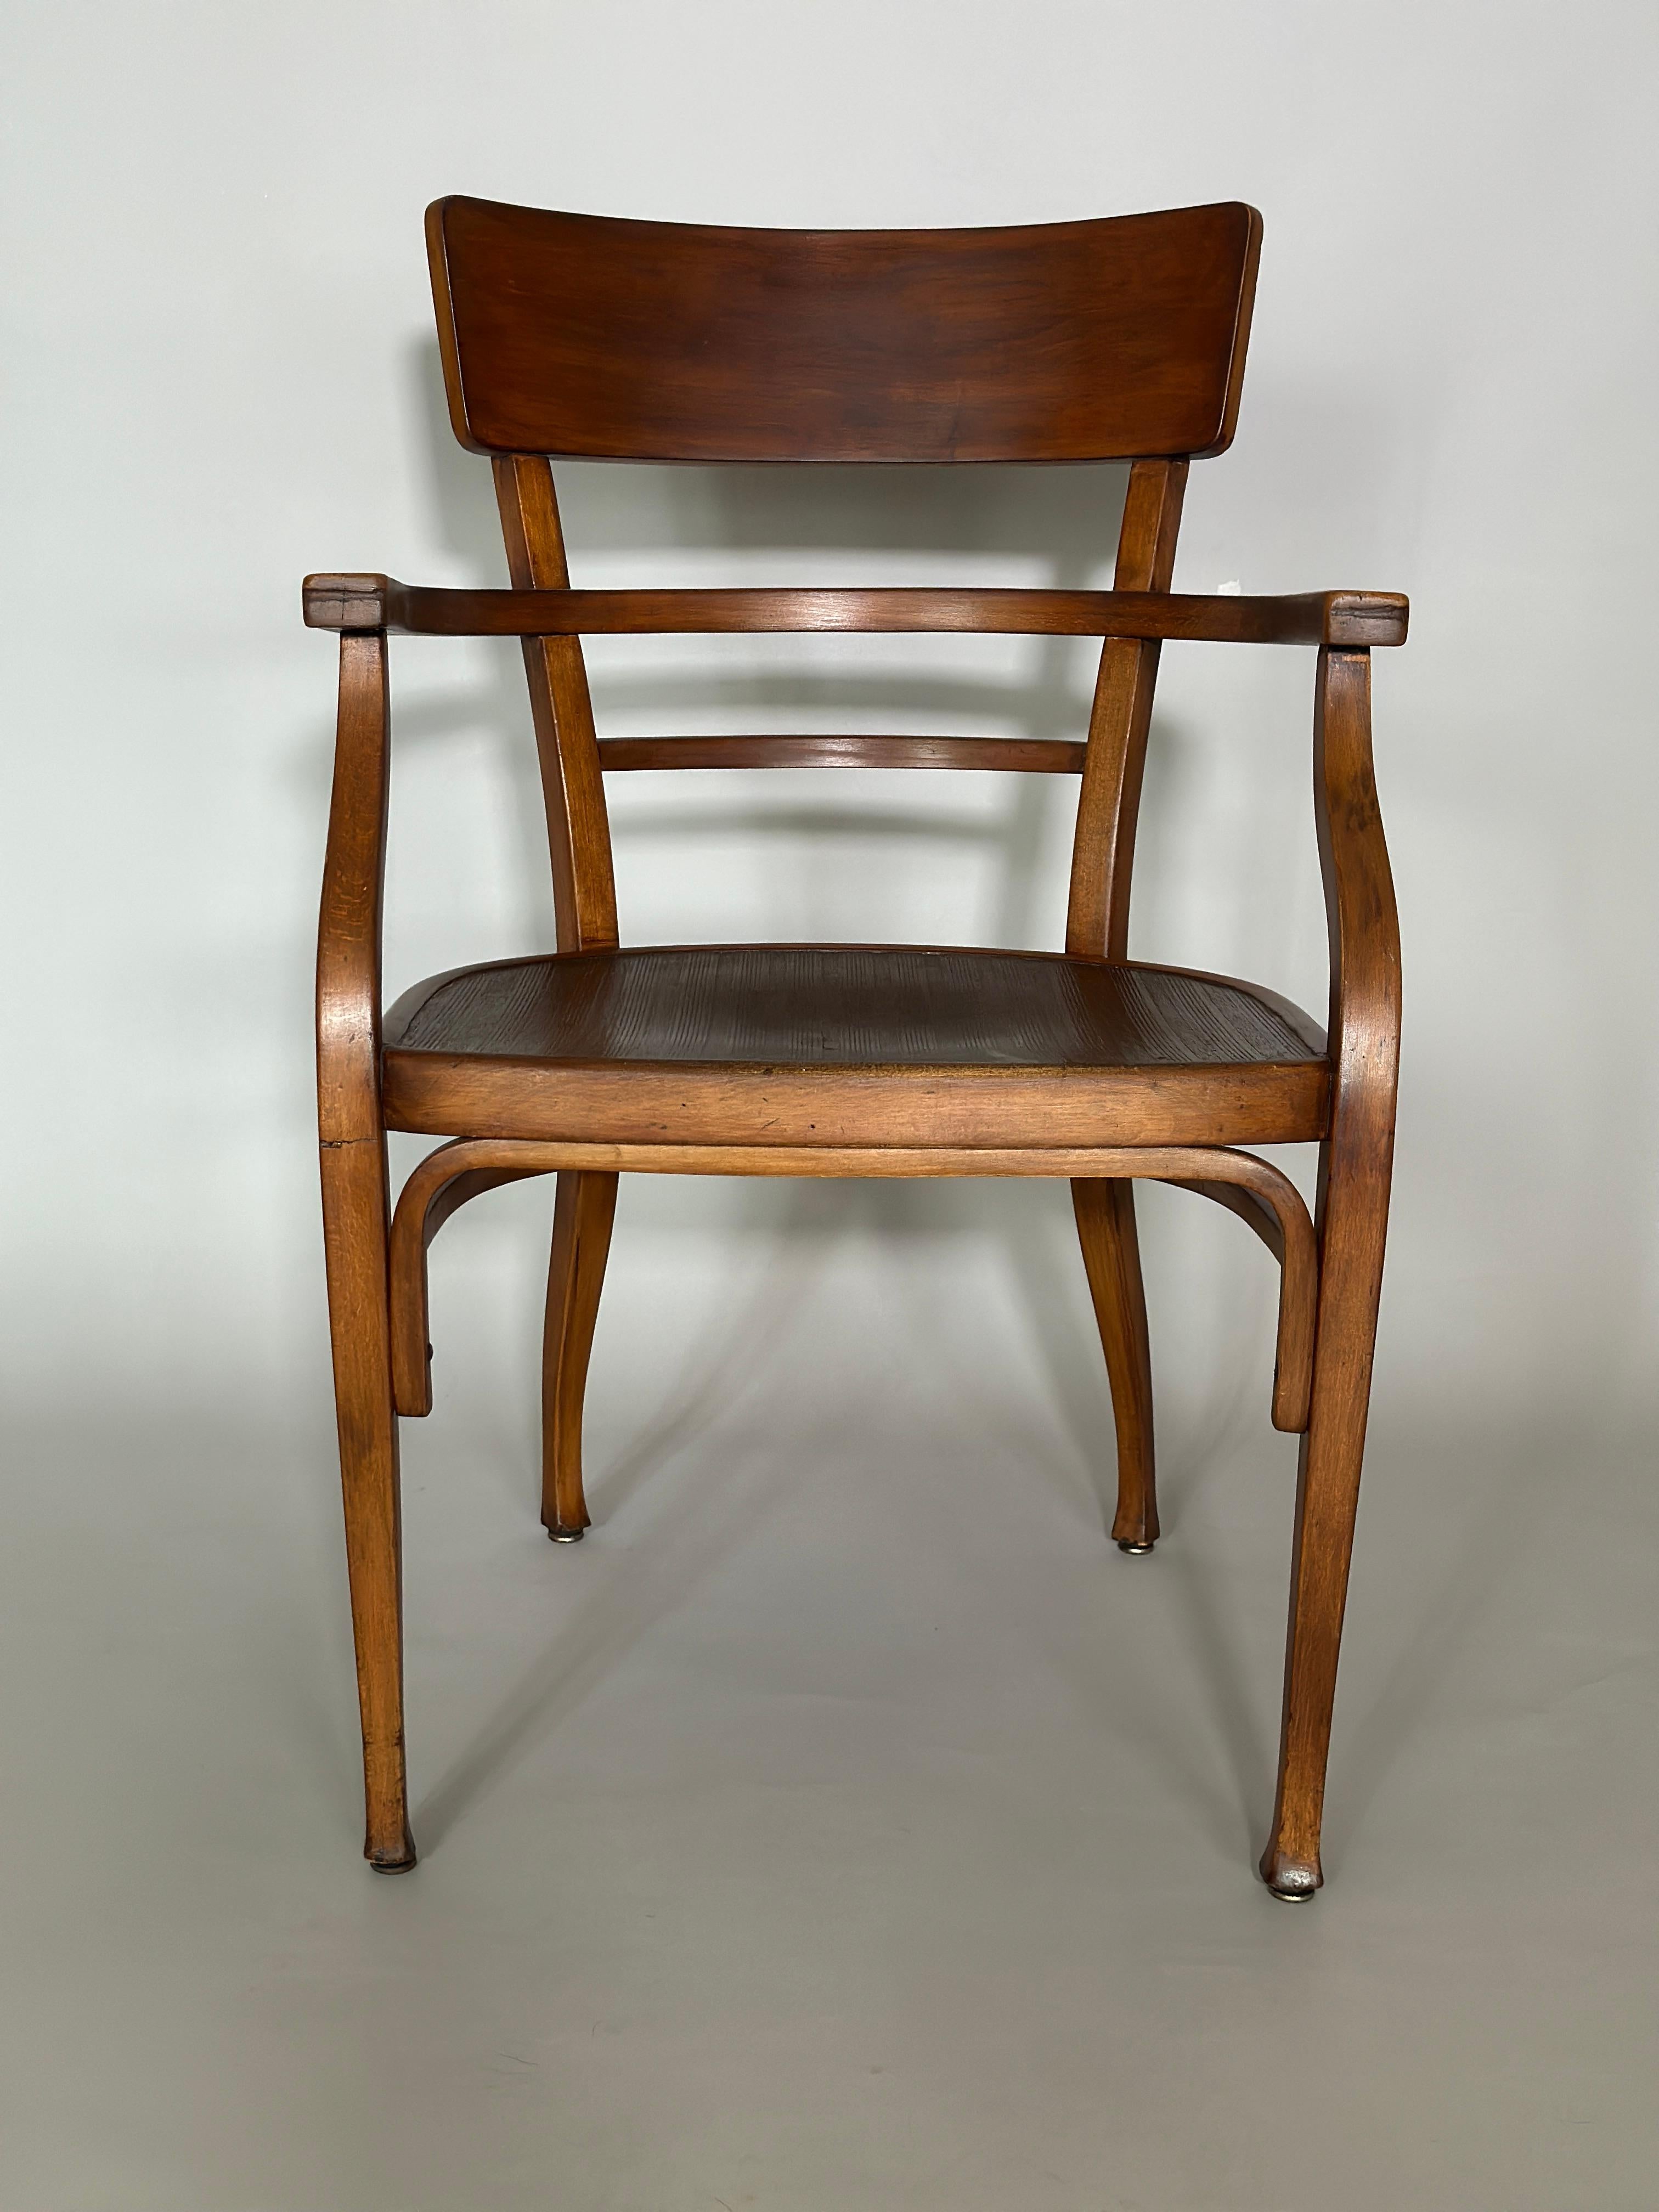 Thonet Stuhl von Otto Wagner, hergestellt in Österreich um 1900.